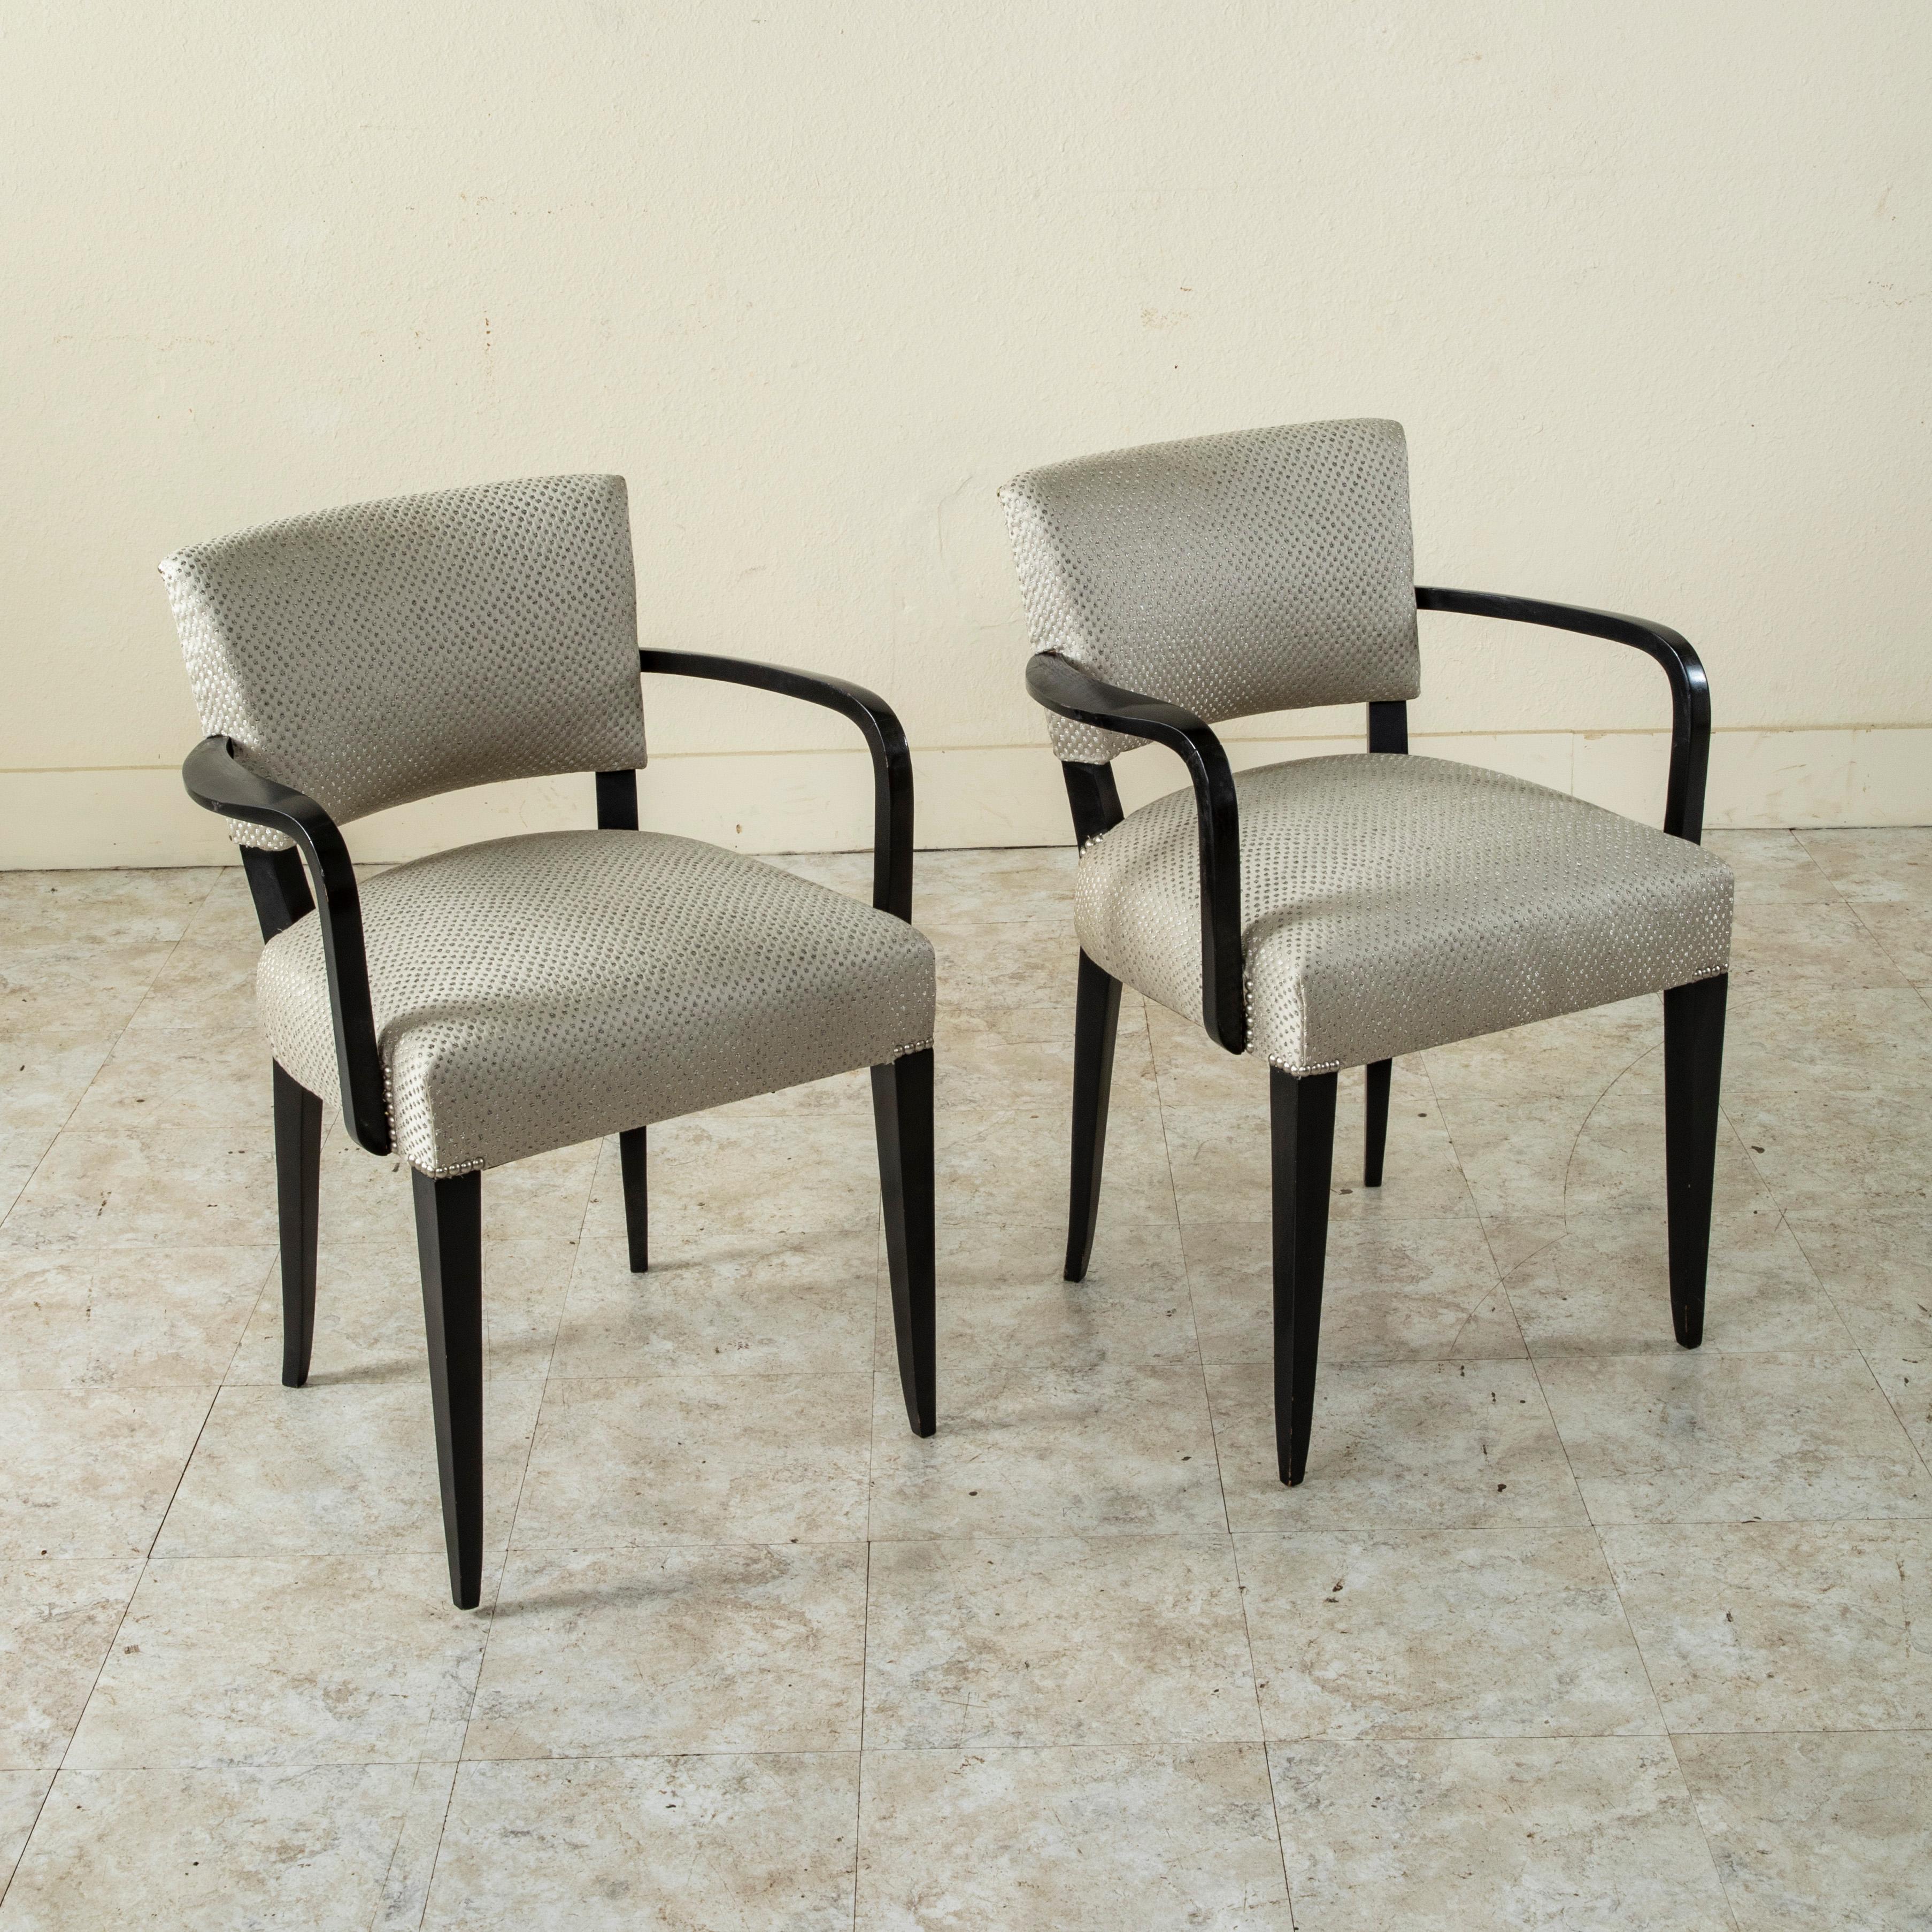 Dieses Paar französischer Stühle aus der Mitte des zwanzigsten Jahrhunderts hat einen schwarz lackierten Rahmen und geschwungene Armlehnen. Die Franzosen bezeichnen diese Stühle als Bridge-Stühle, da dieser Stil in den 1940er Jahren am Bridge-Tisch